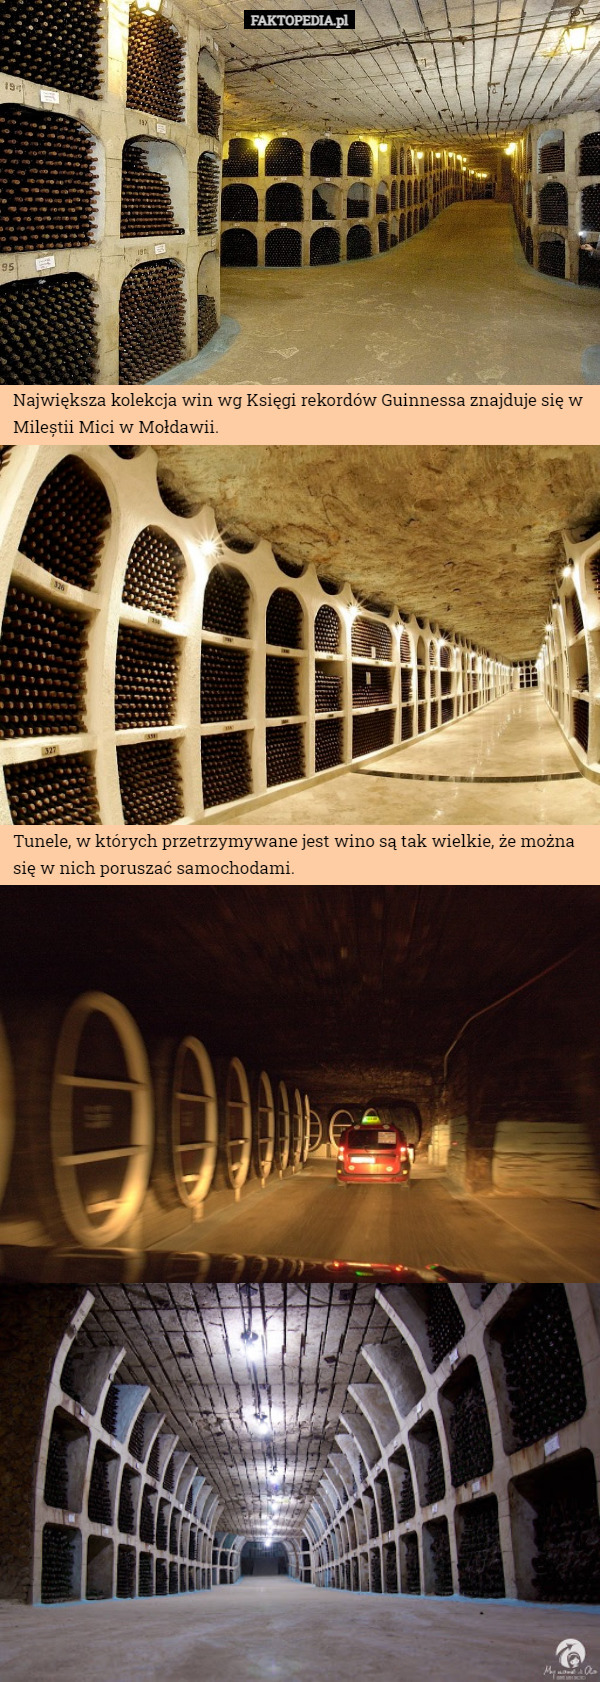 Największa kolekcja win wg Księgi rekordów Guinnessa znajduje się w Mileștii Mici w Mołdawii. Tunele, w których przetrzymywane jest wino są tak wielkie, że można się w nich poruszać samochodami. 